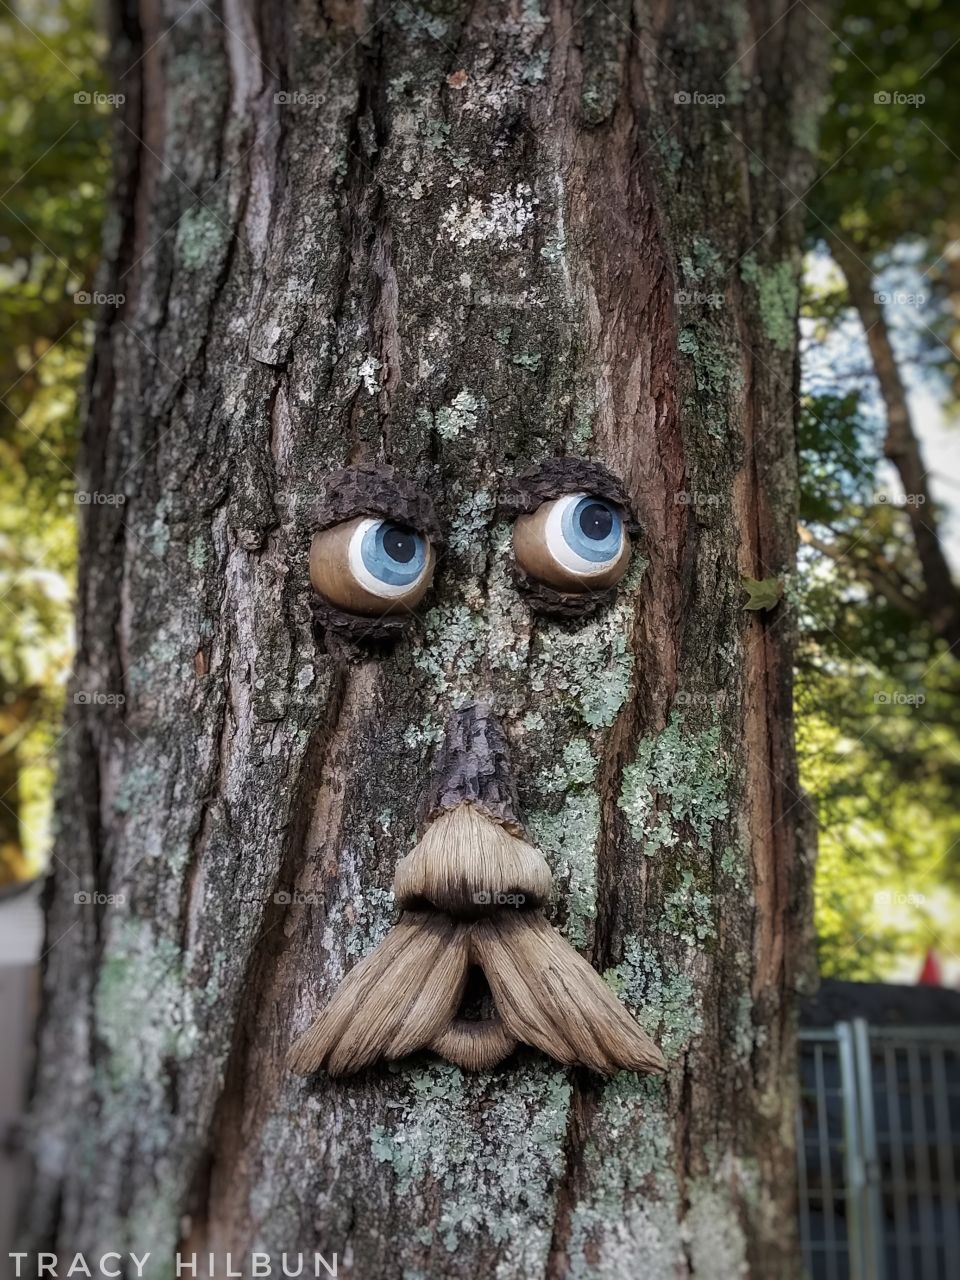 fun in the yard. #tree #rustic #rusticdecor #yardart #funny #funnyface #tree #treebark